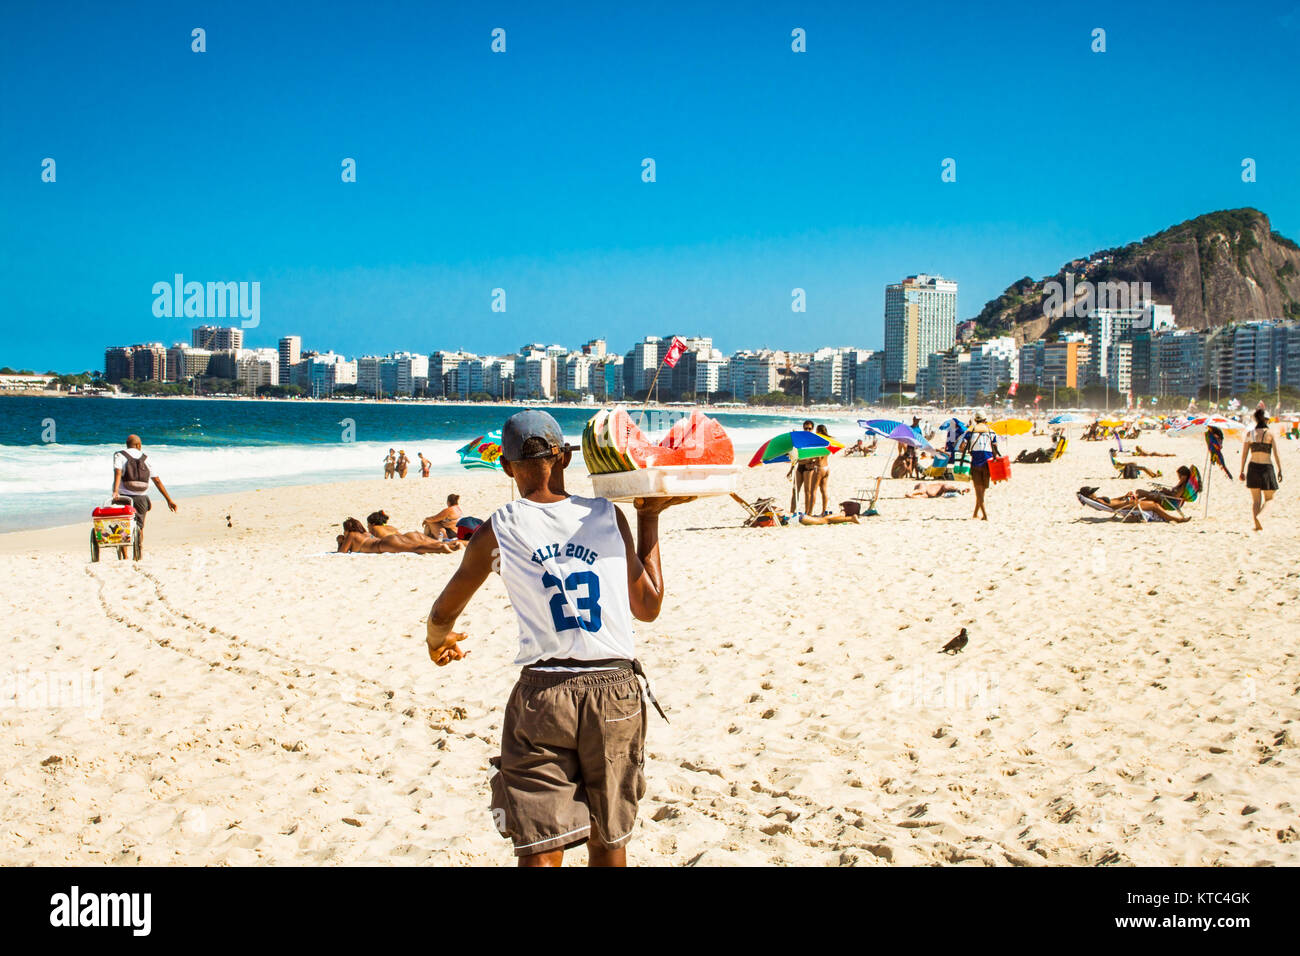 RIO DE JANEIRO, BRAZIL - APRIL 28, 2015: Old Brazilian carrying watermelon on April 28, 2015 at Copacabana Beach, Rio de Janeiro. Brazil. Stock Photo